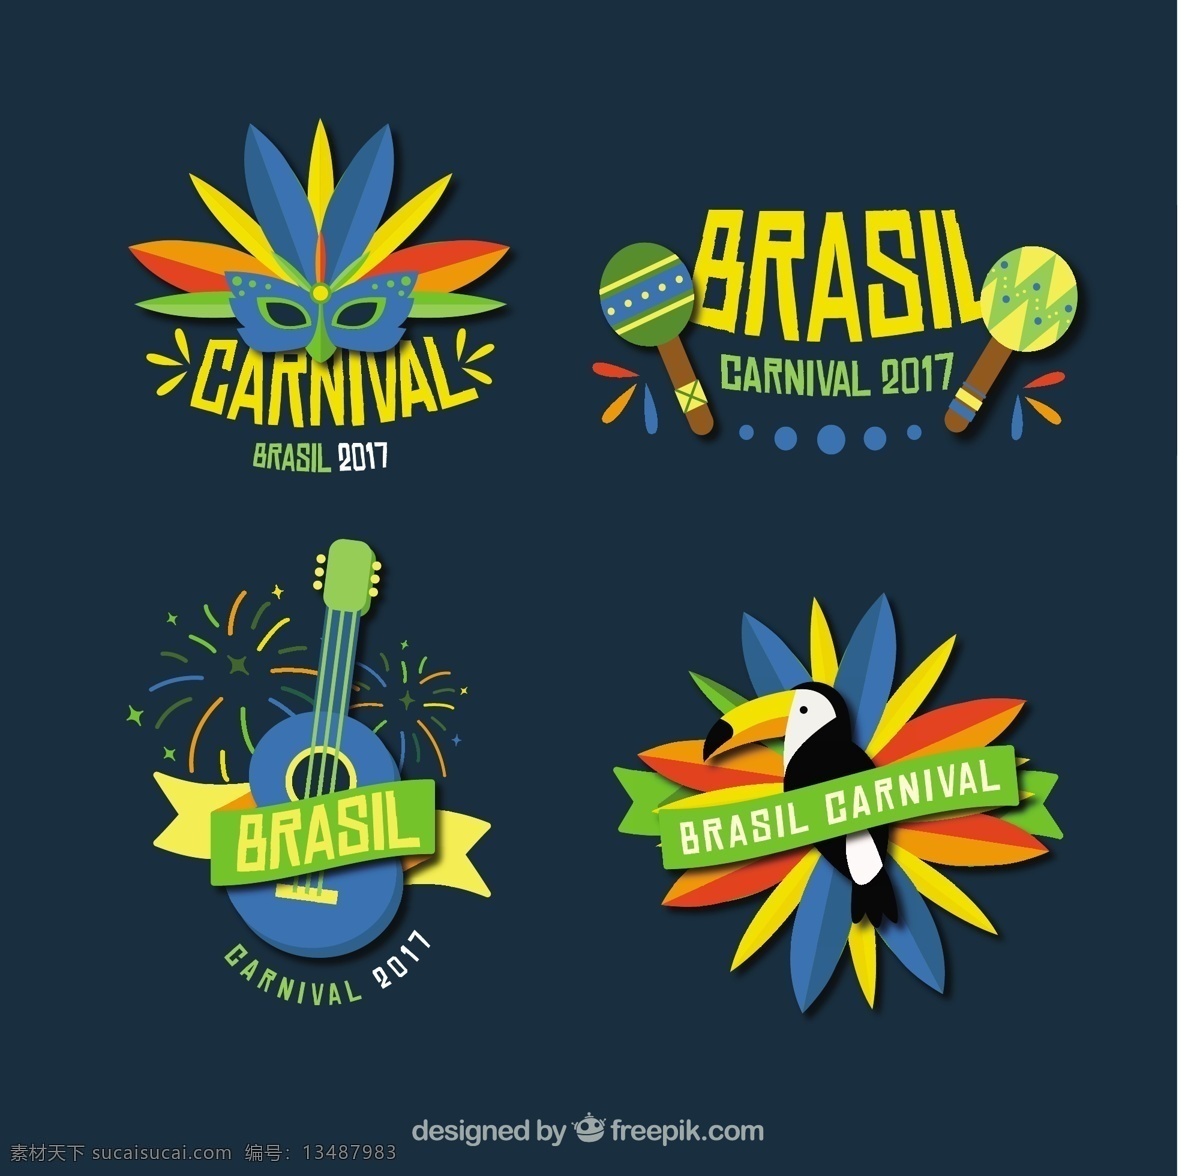 巴西 狂欢节 贴纸 系列 方 庆典 节日 标签 事件 节 吉他 平 面具 平面设计 巴西狂欢节 假面舞会 娱乐 收藏 神秘的面具